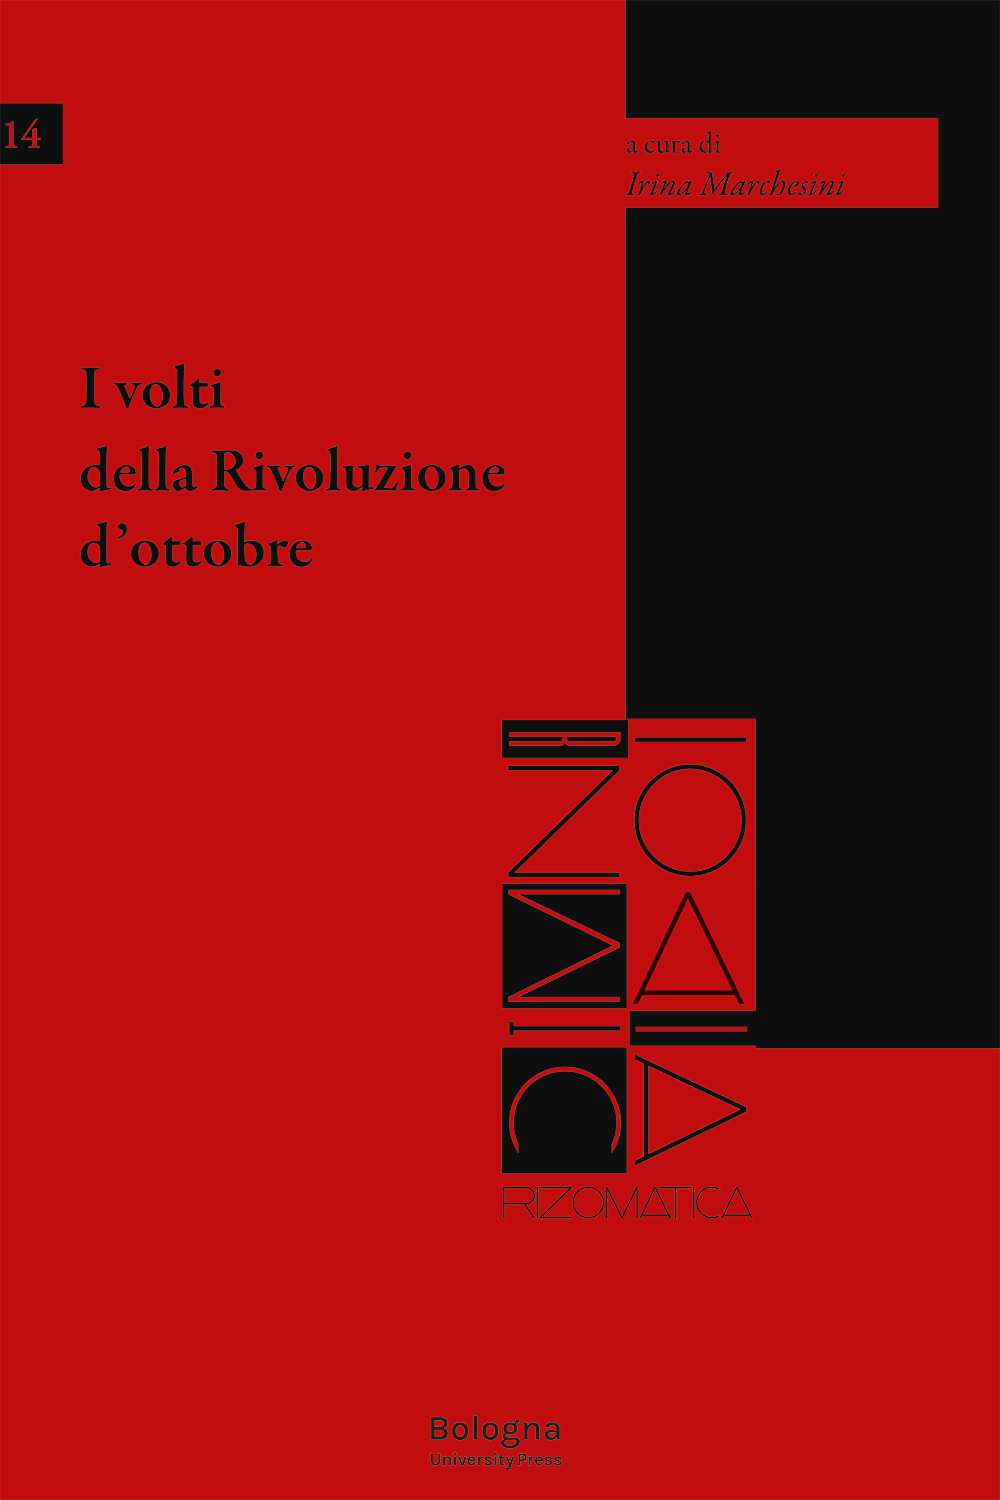 I volti della Rivoluzione d’ottobre - Bologna University Press